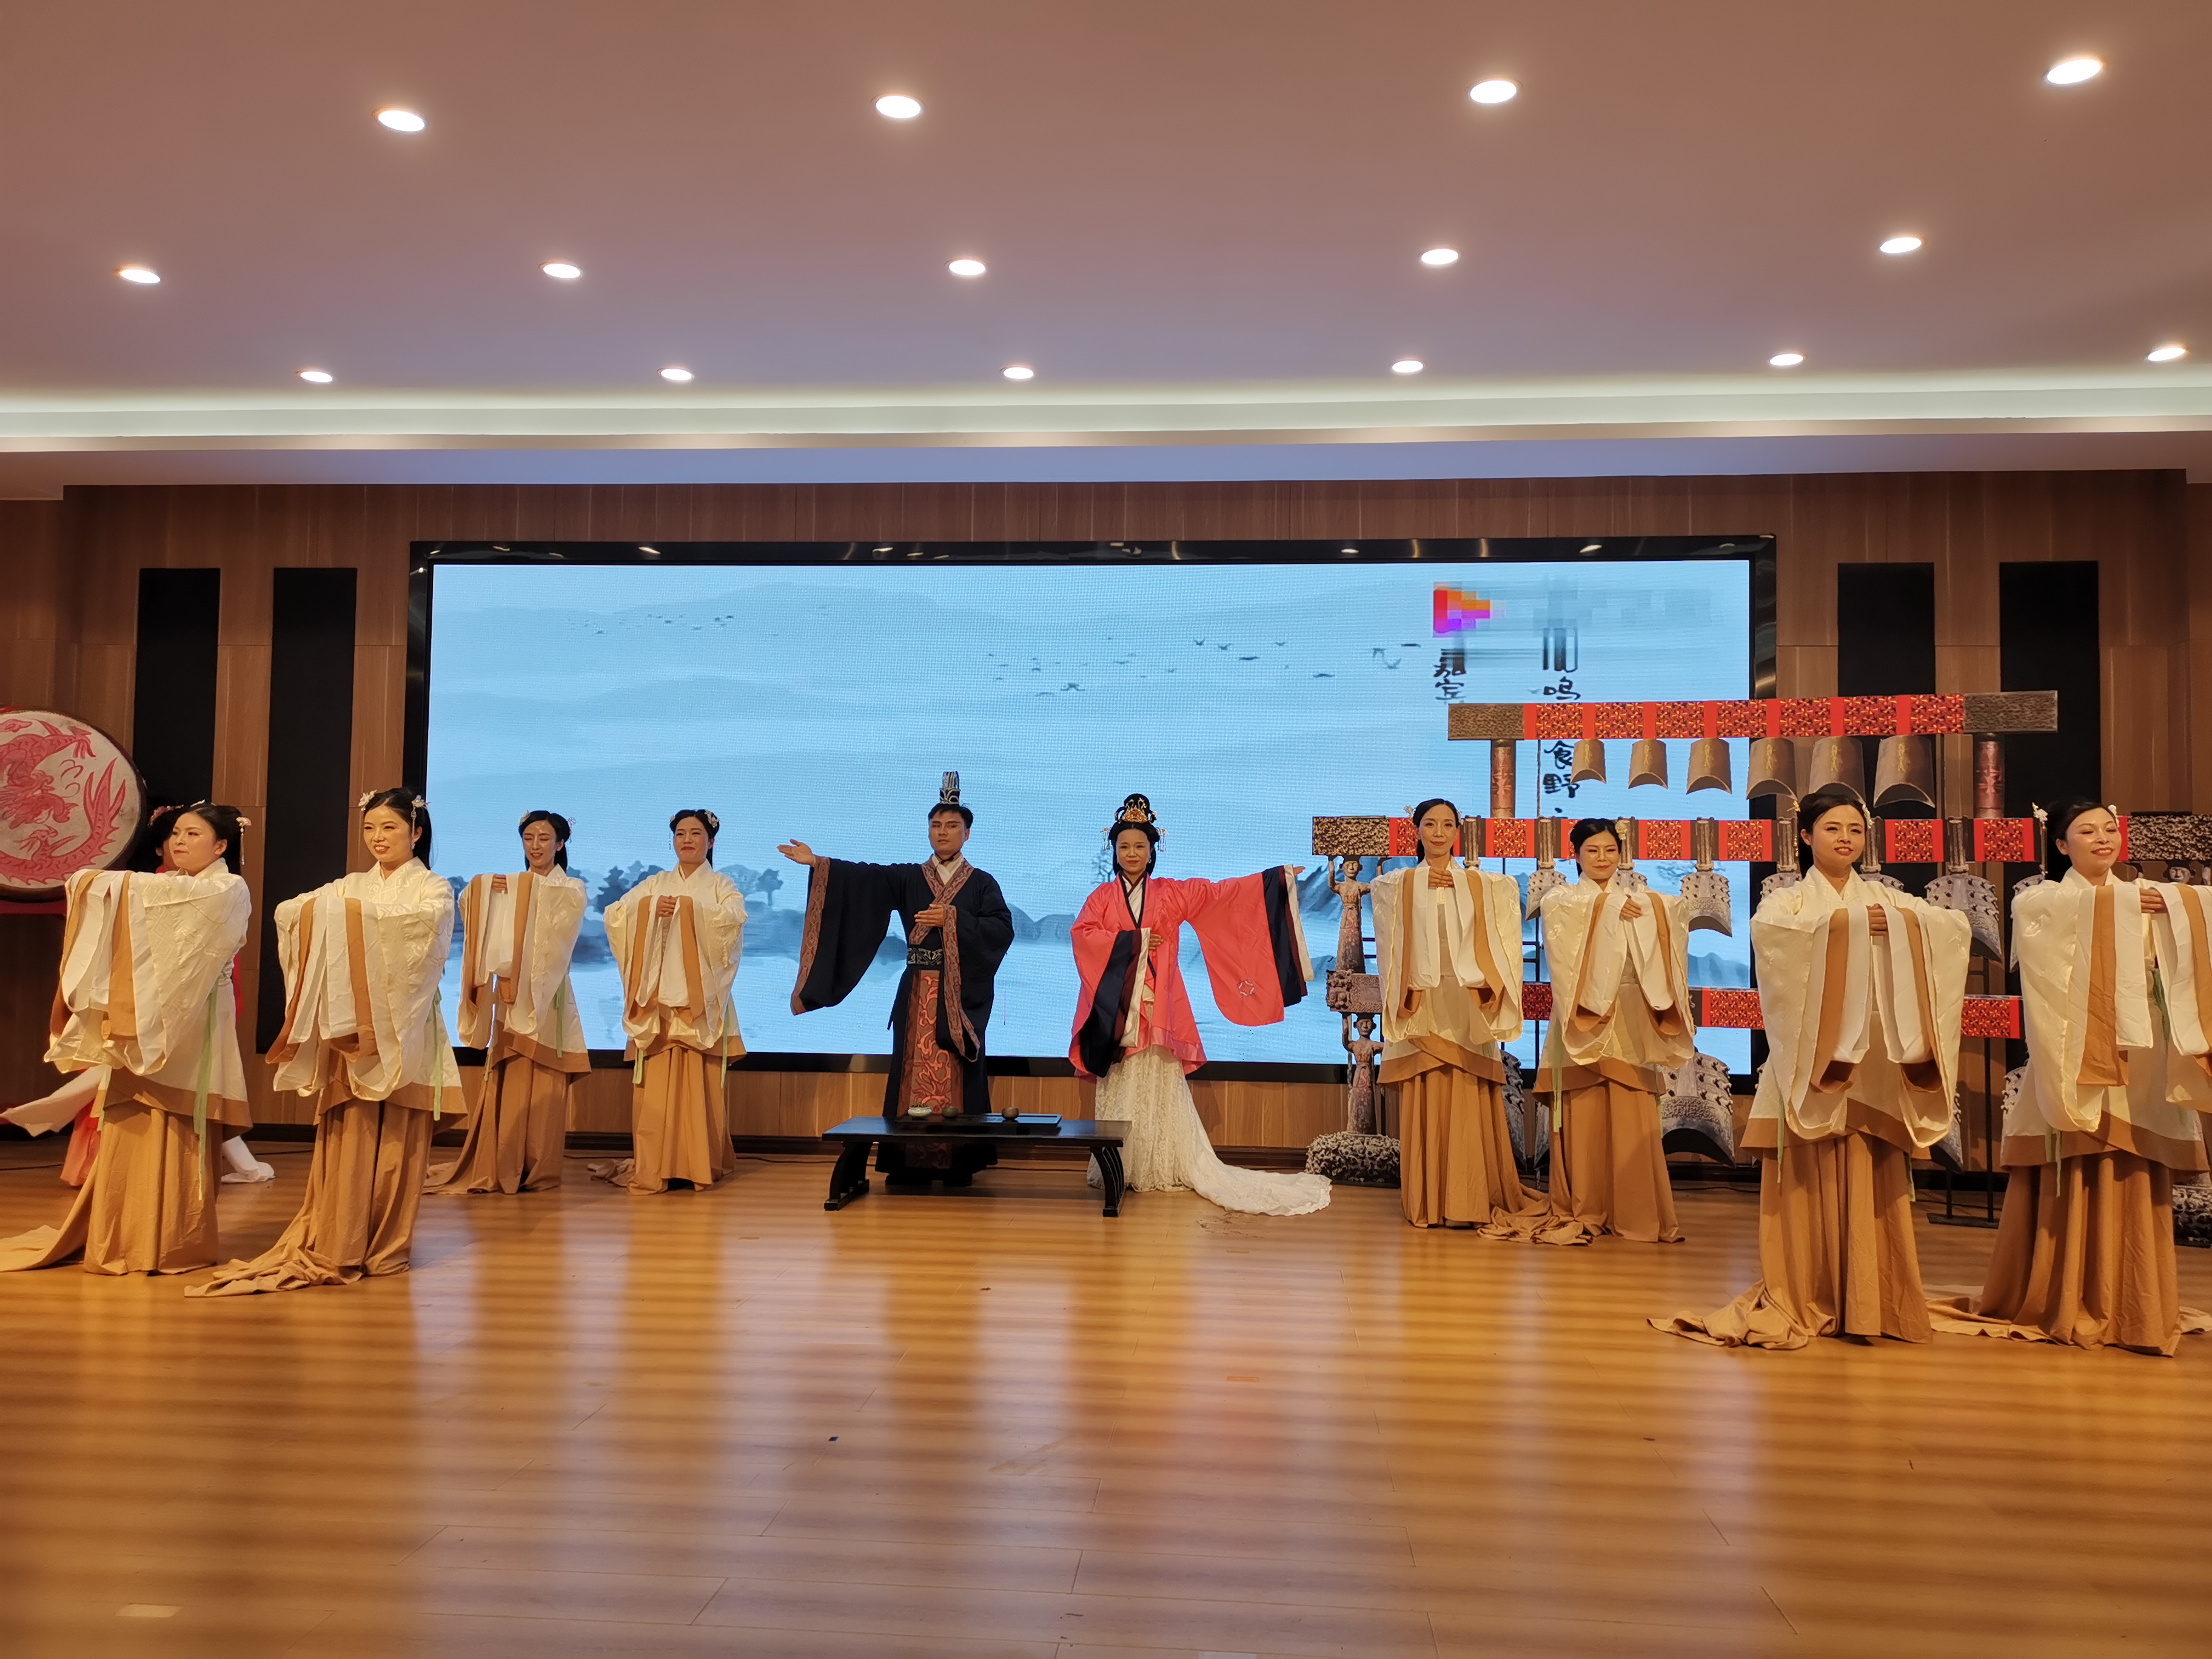 翠屏区成功举办首届中小学教师中华经典吟诵比赛决赛